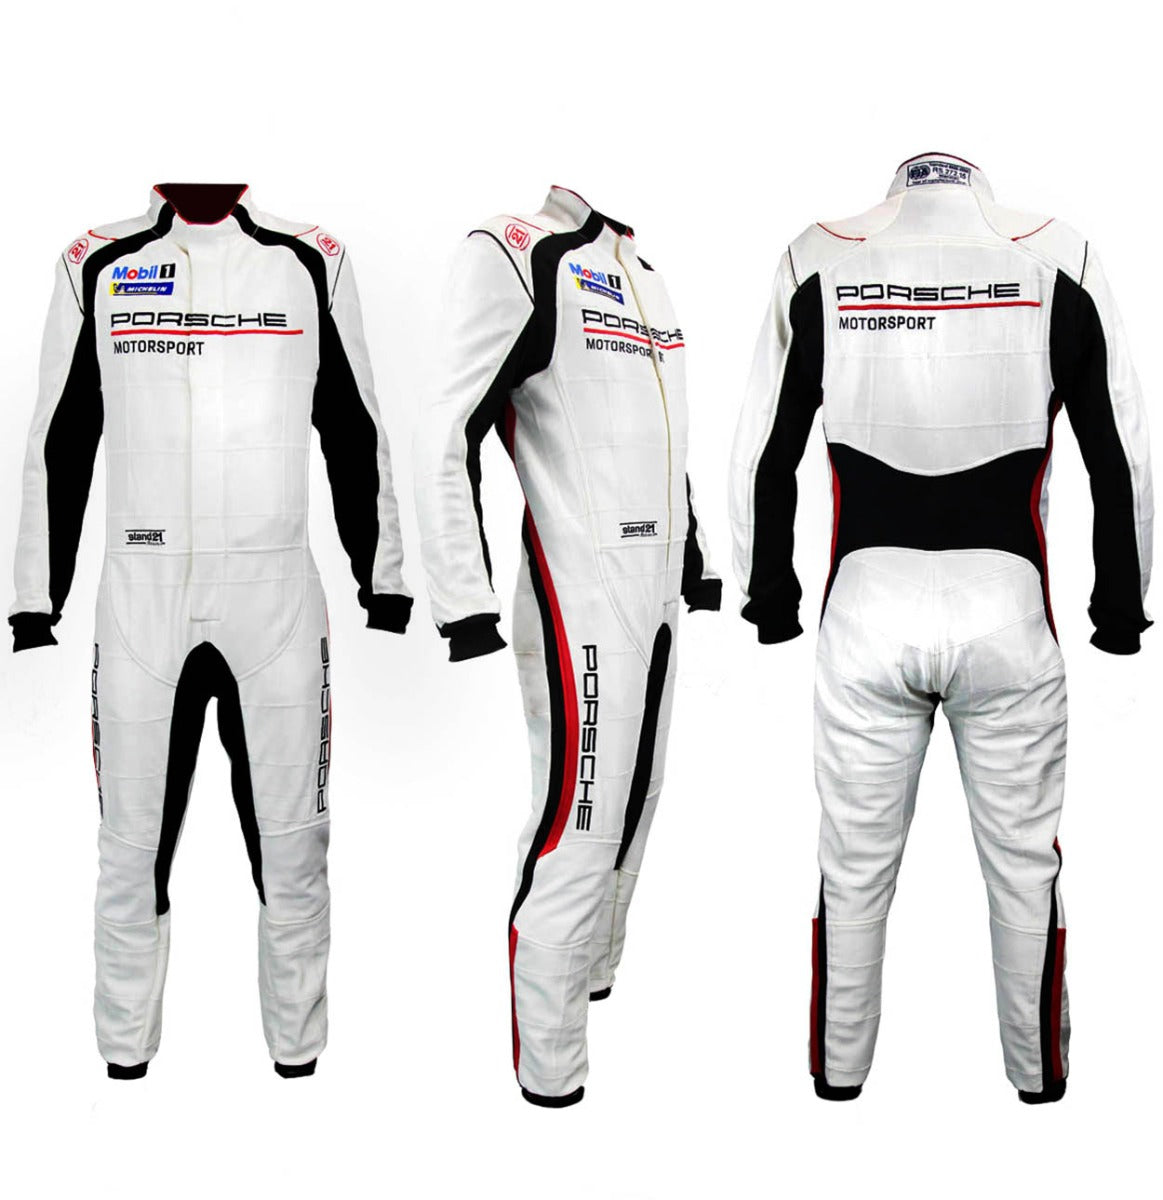 Stand21 Porsche Motorsport La Couture HSC Race Suit Full Image